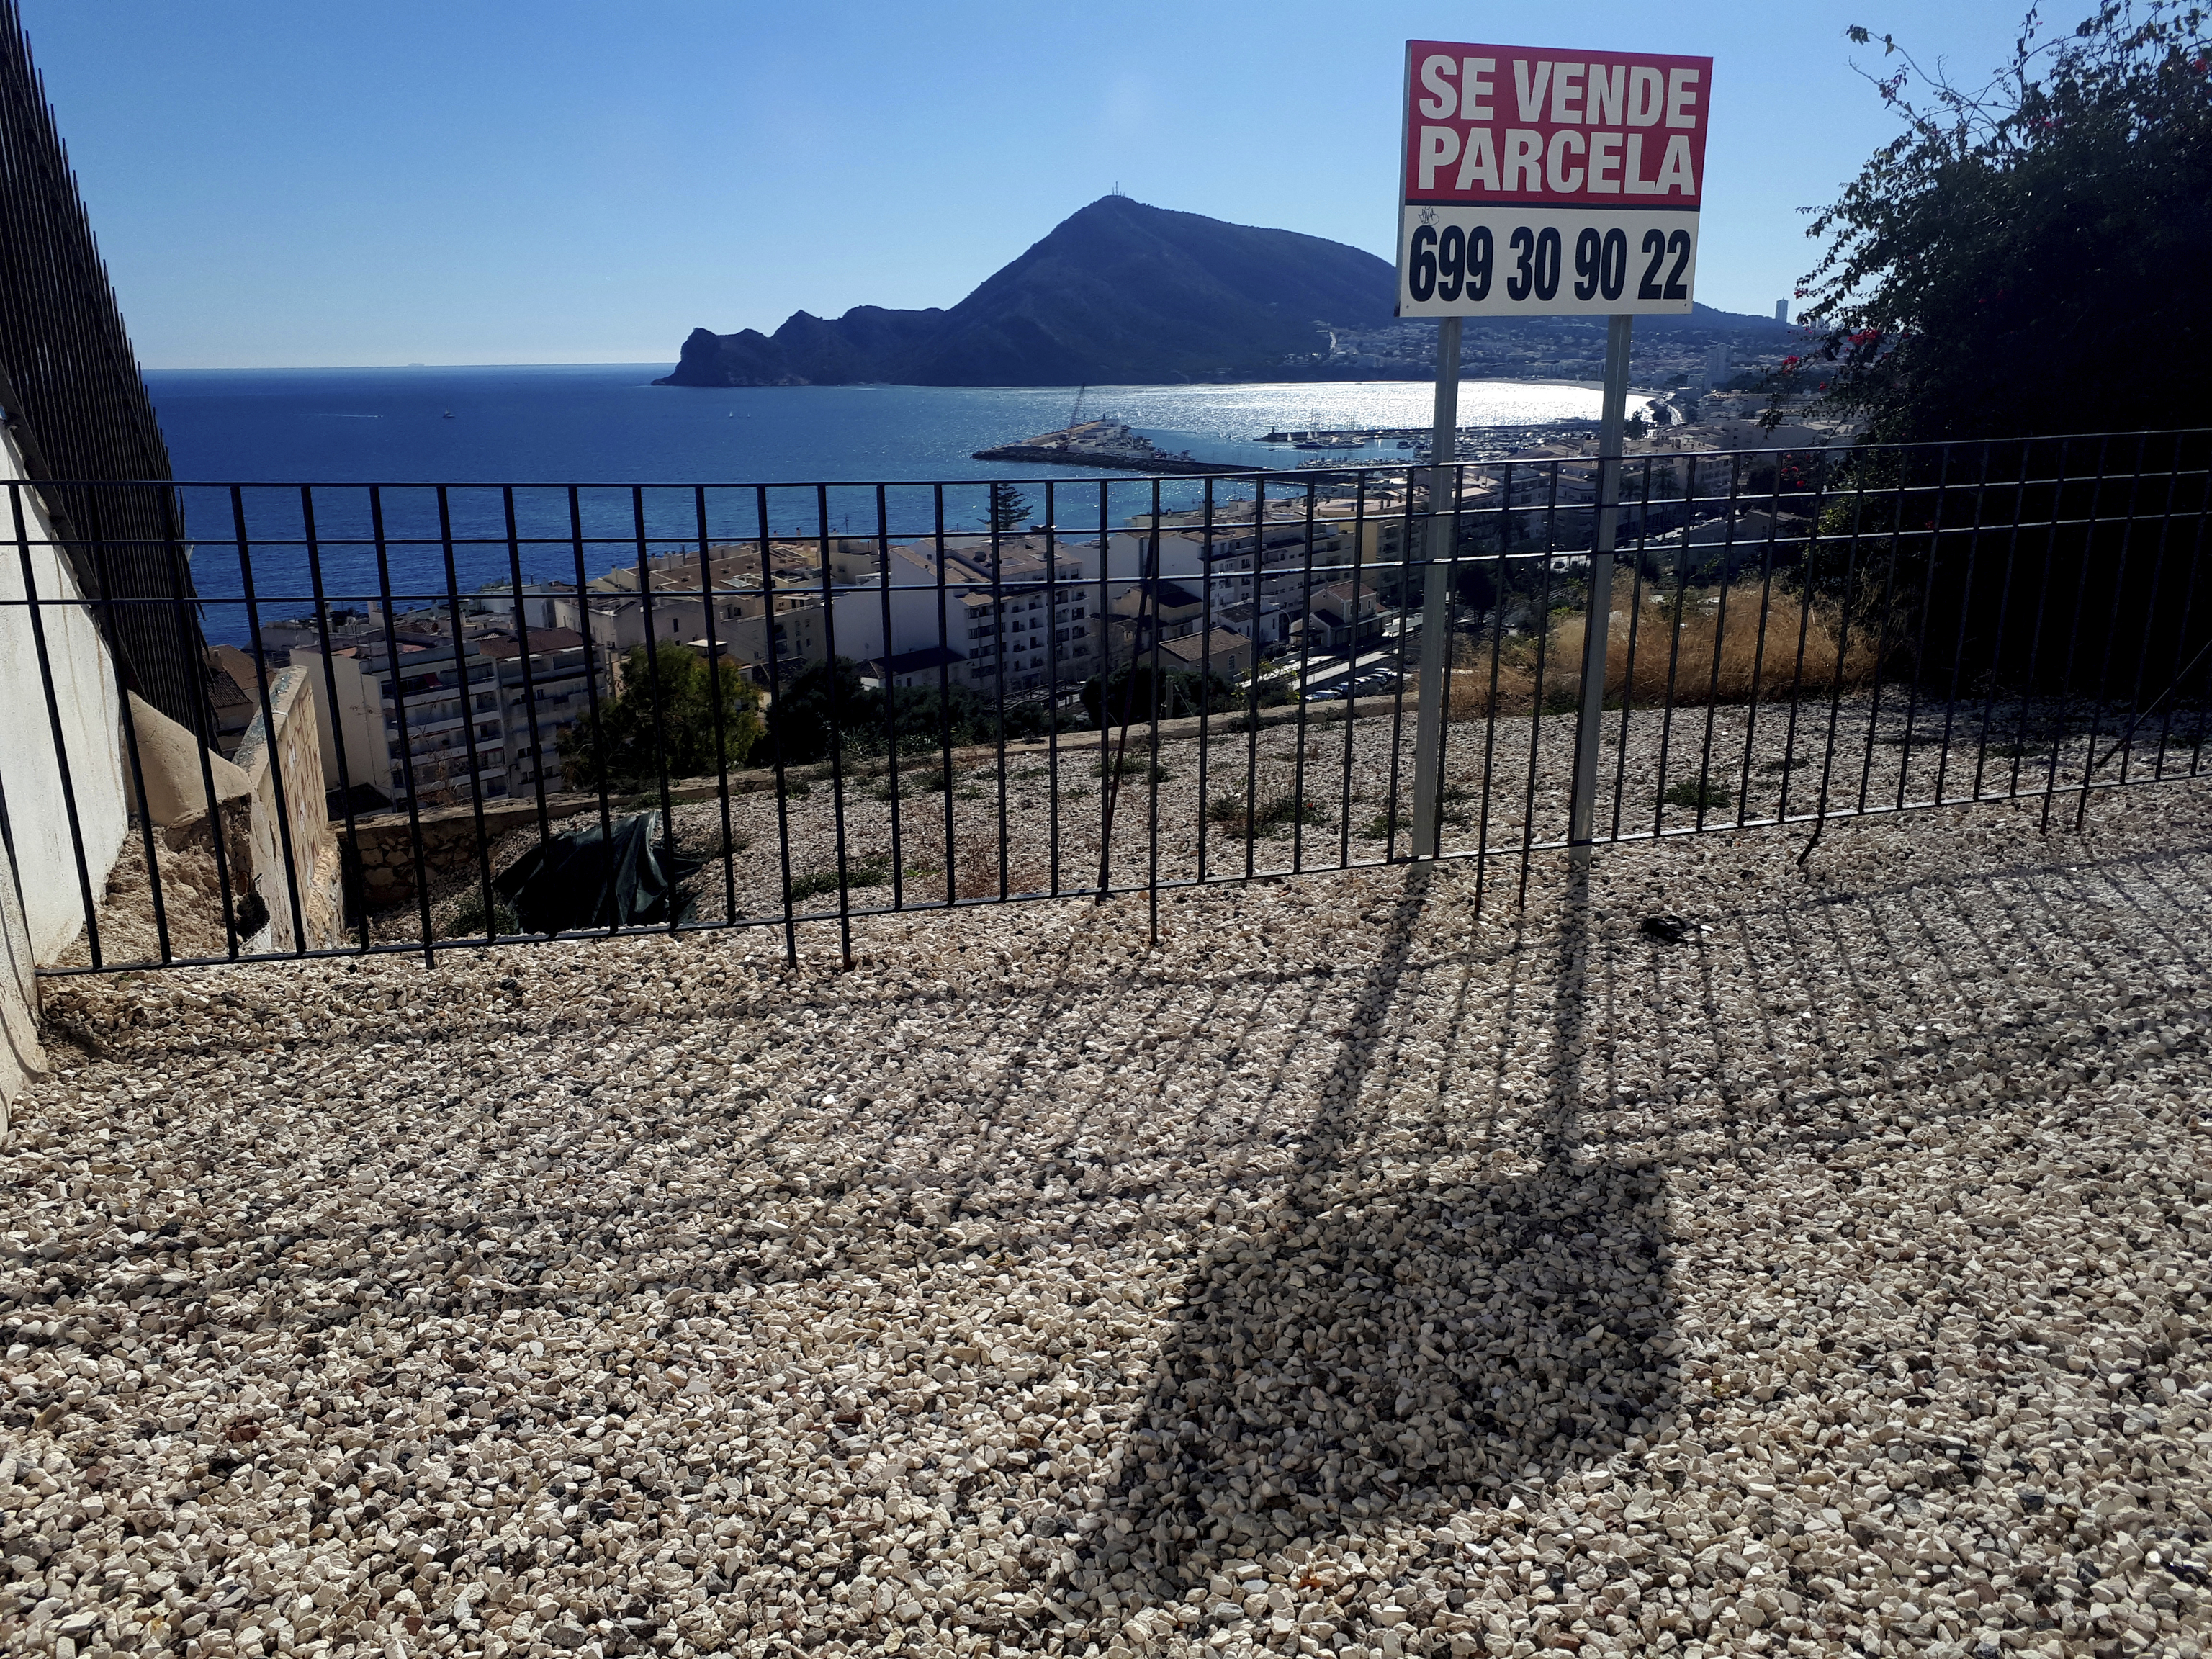 Cartel anunciando la venta de un solar en Altea, Alicante